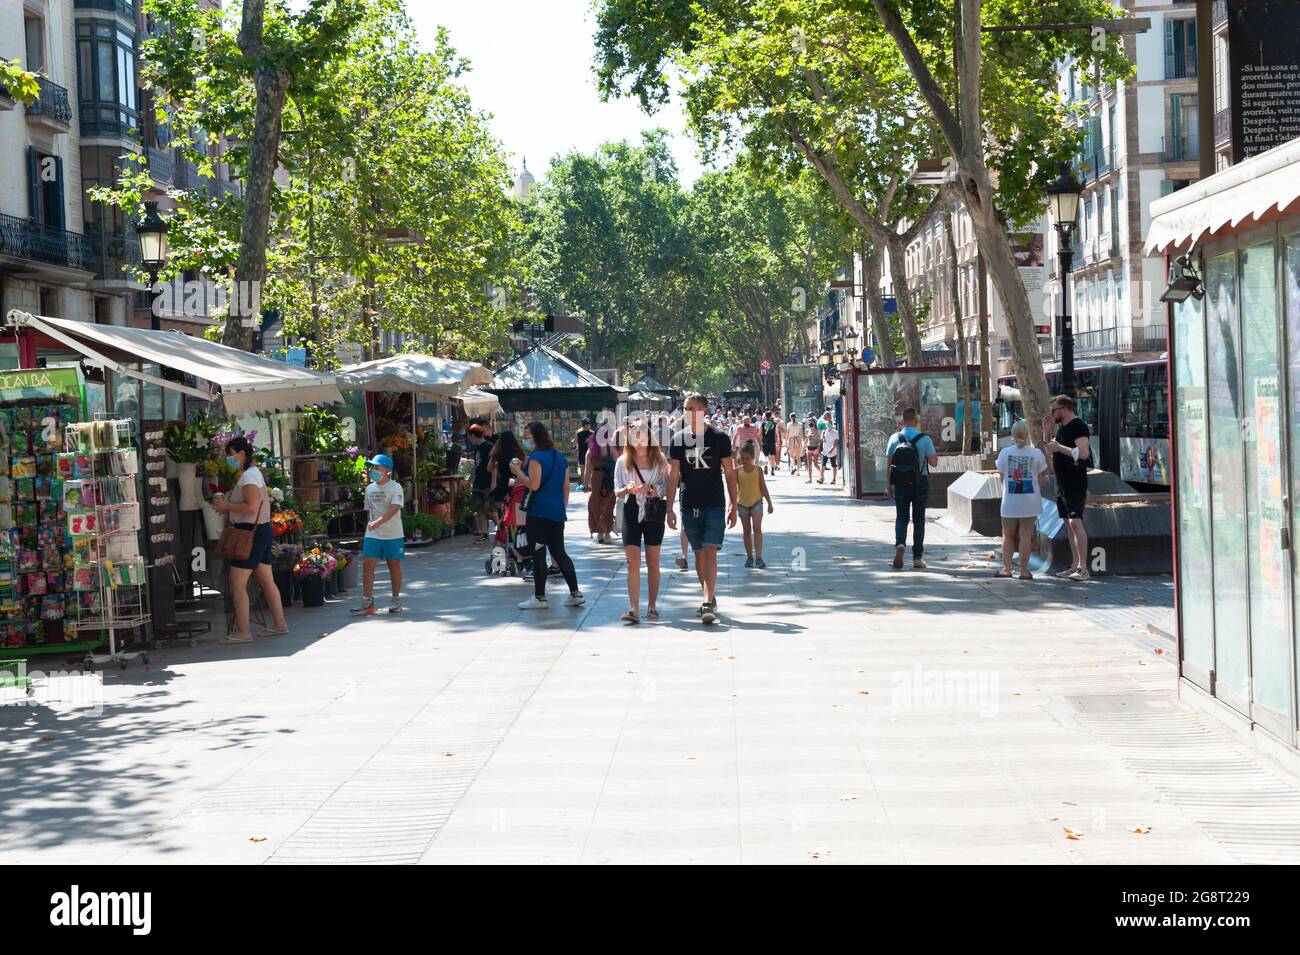 Barcelona, España; 19th de julio de 2021: Grupo de turistas paseando por las Ramblas de Barcelona durante el aumento de la incidencia de COVID-19 casos de Foto de stock